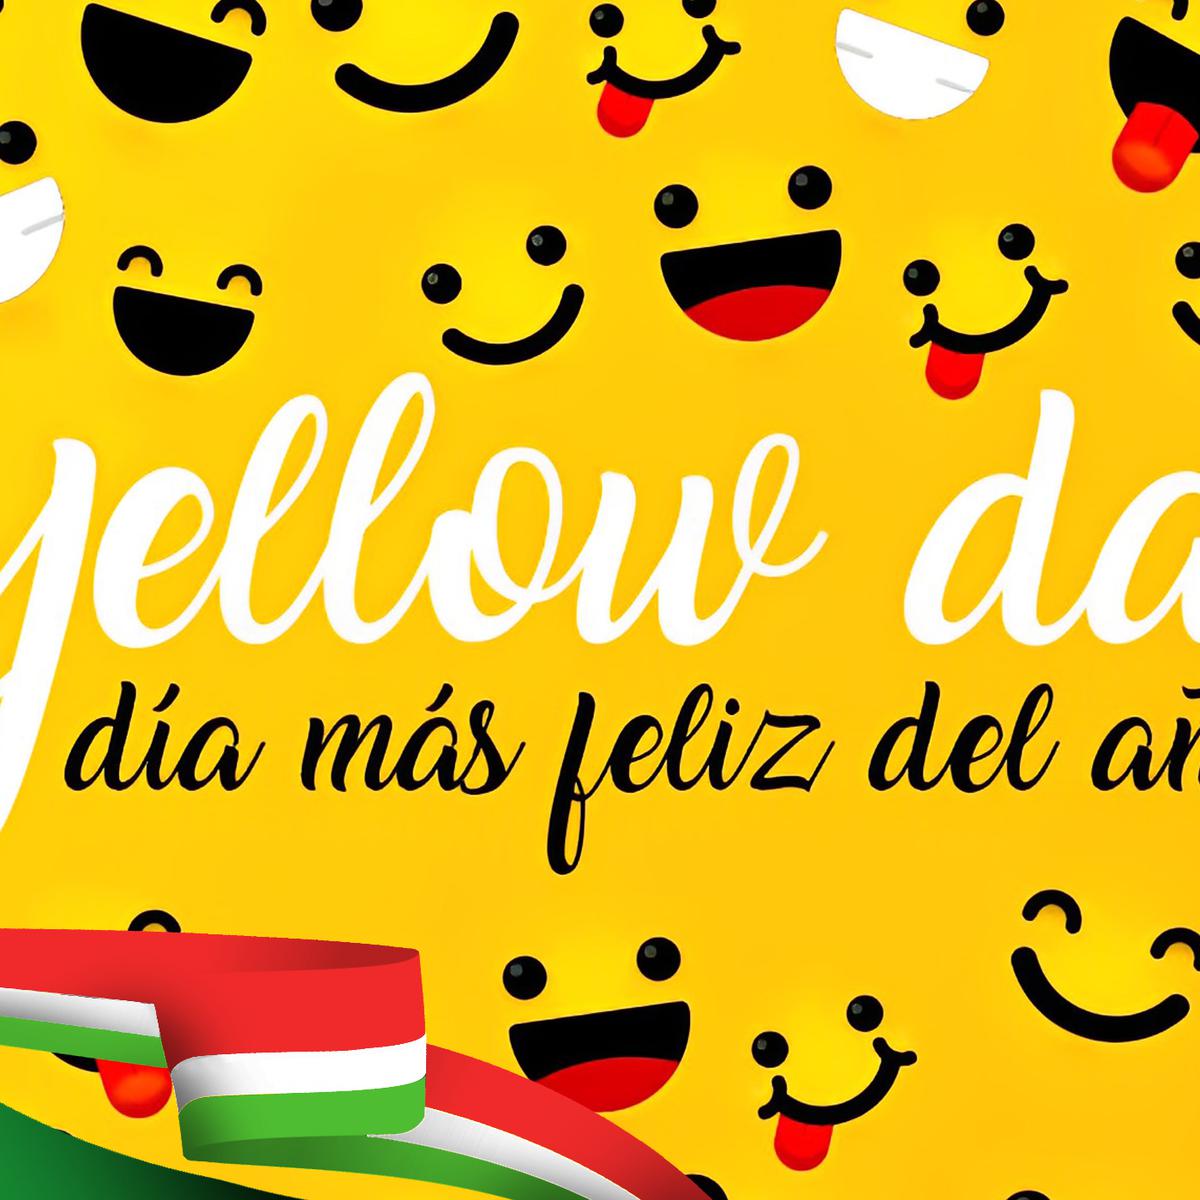 Yellow day: manualidades para el día más feliz del año